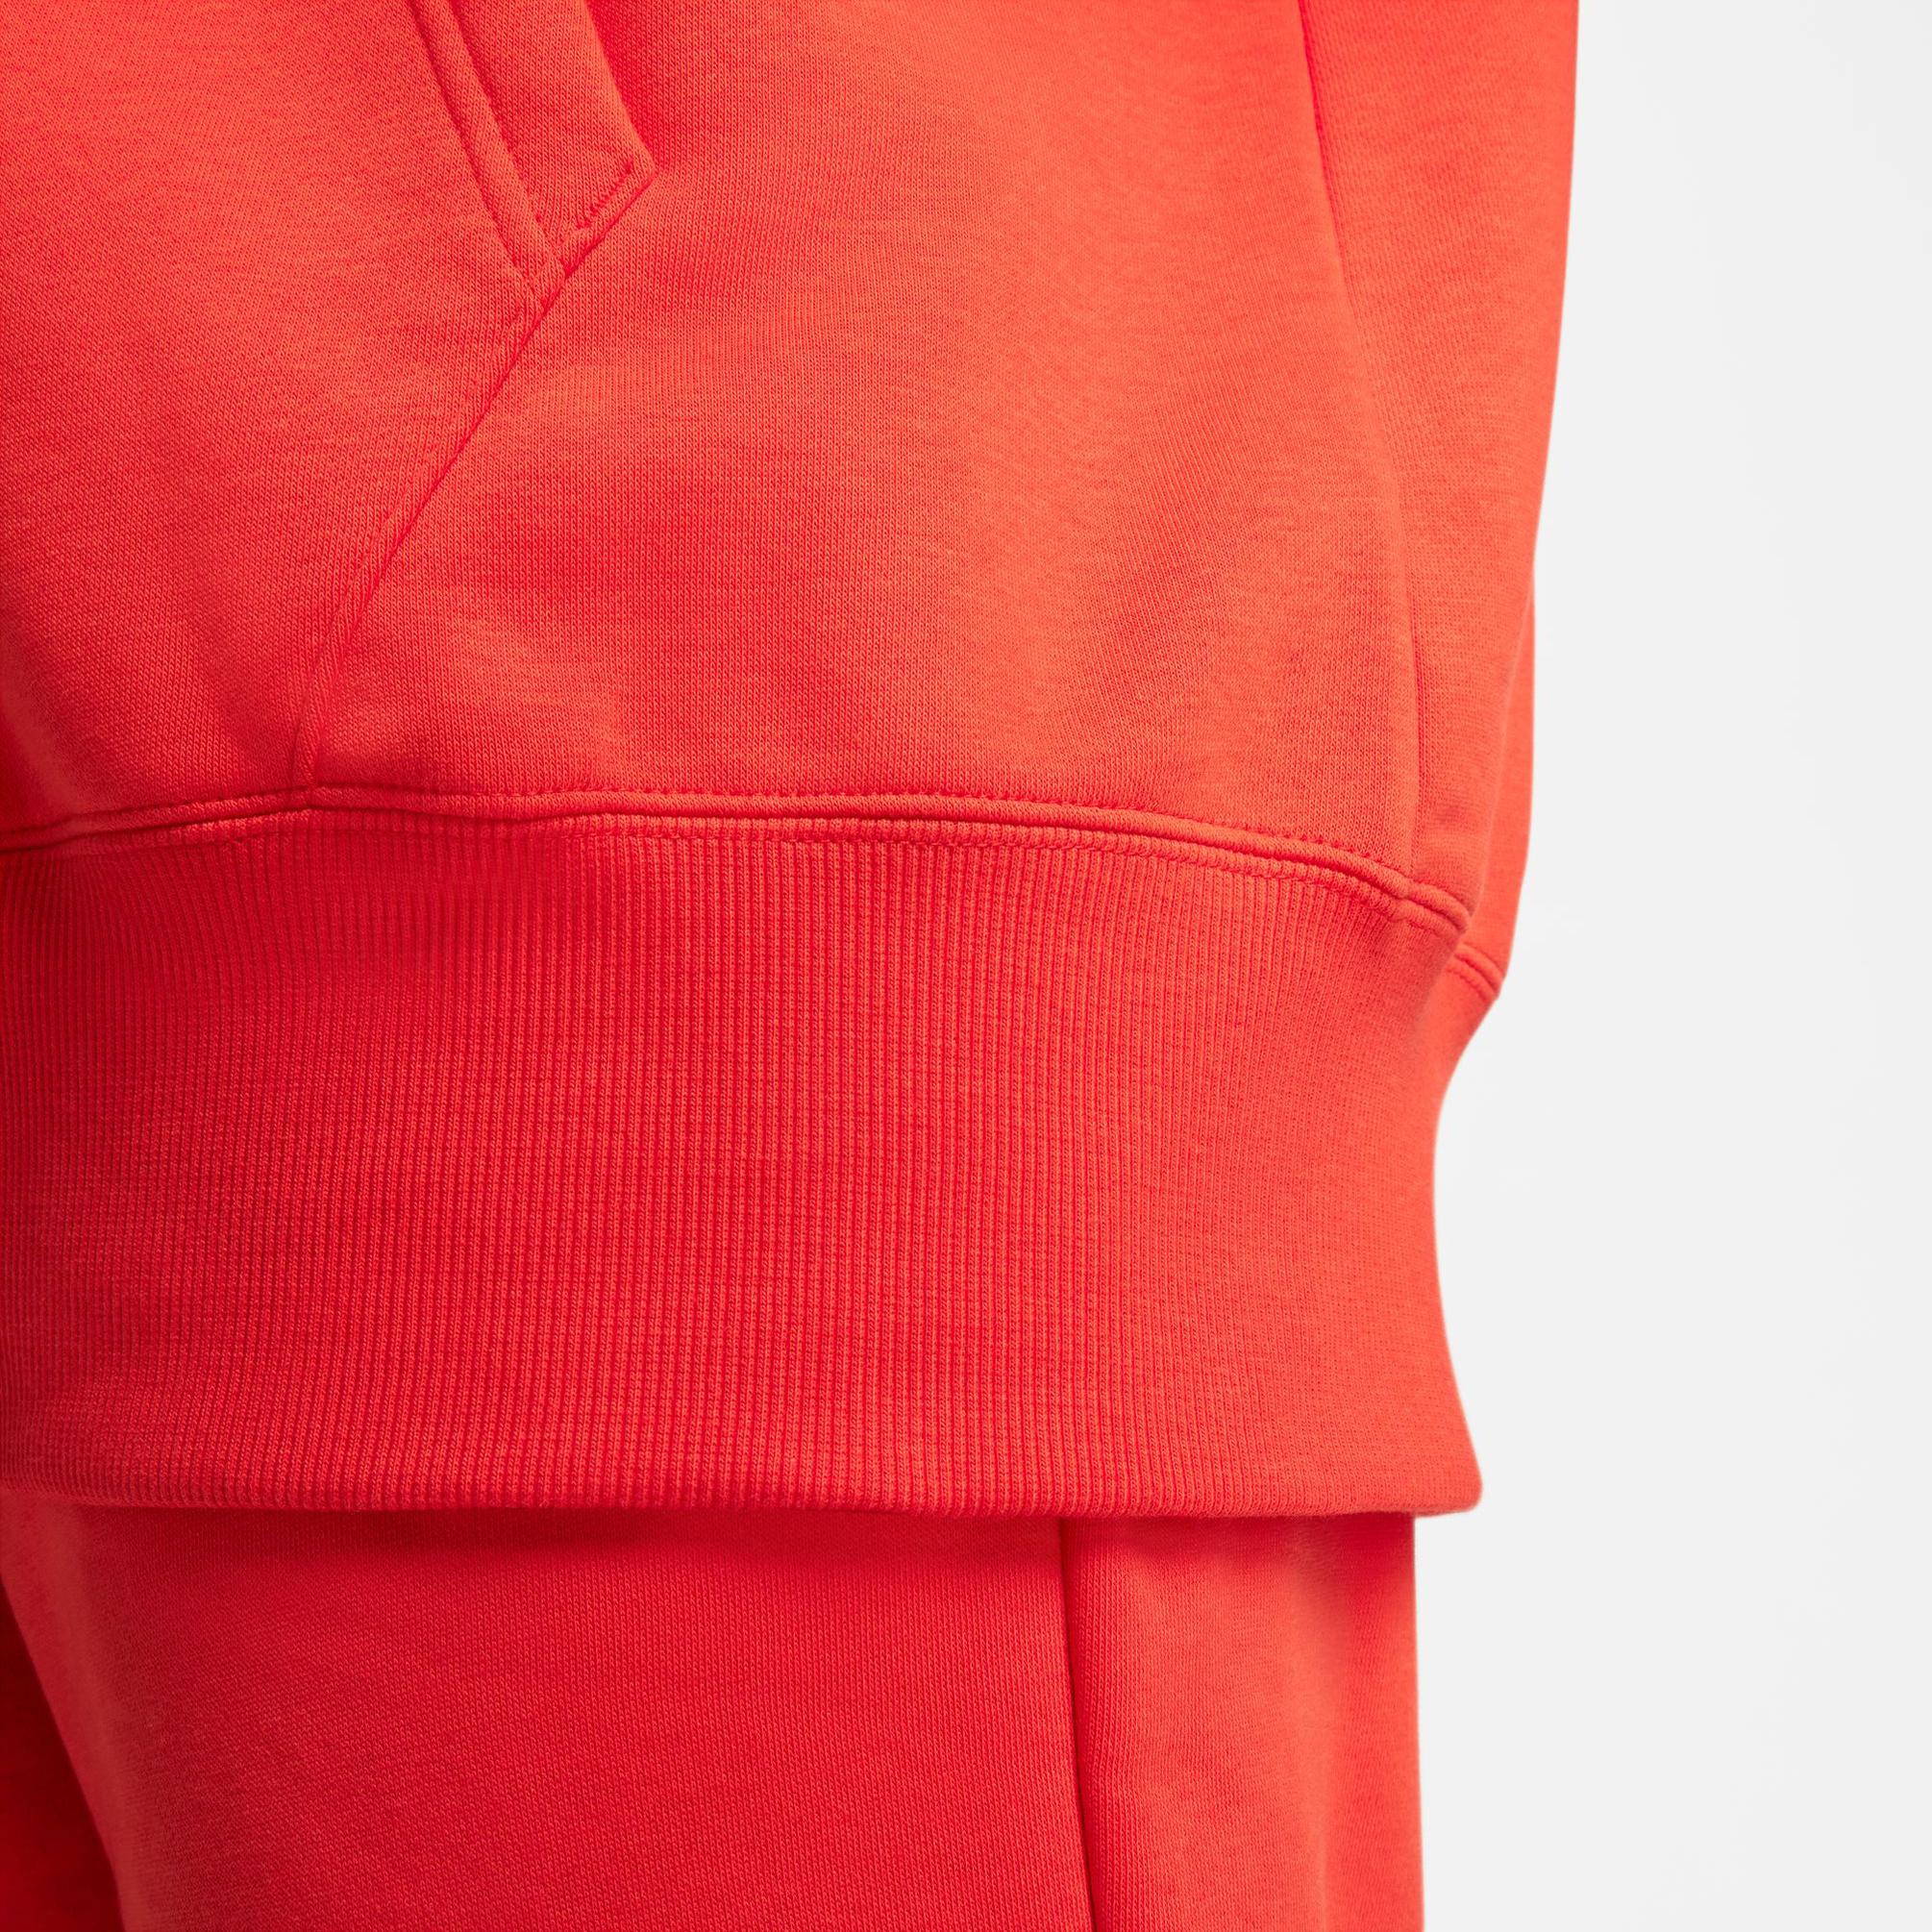  Nike Sportswear Fleece Full-Zip Kadın Kırmızı Eşofman Üstü